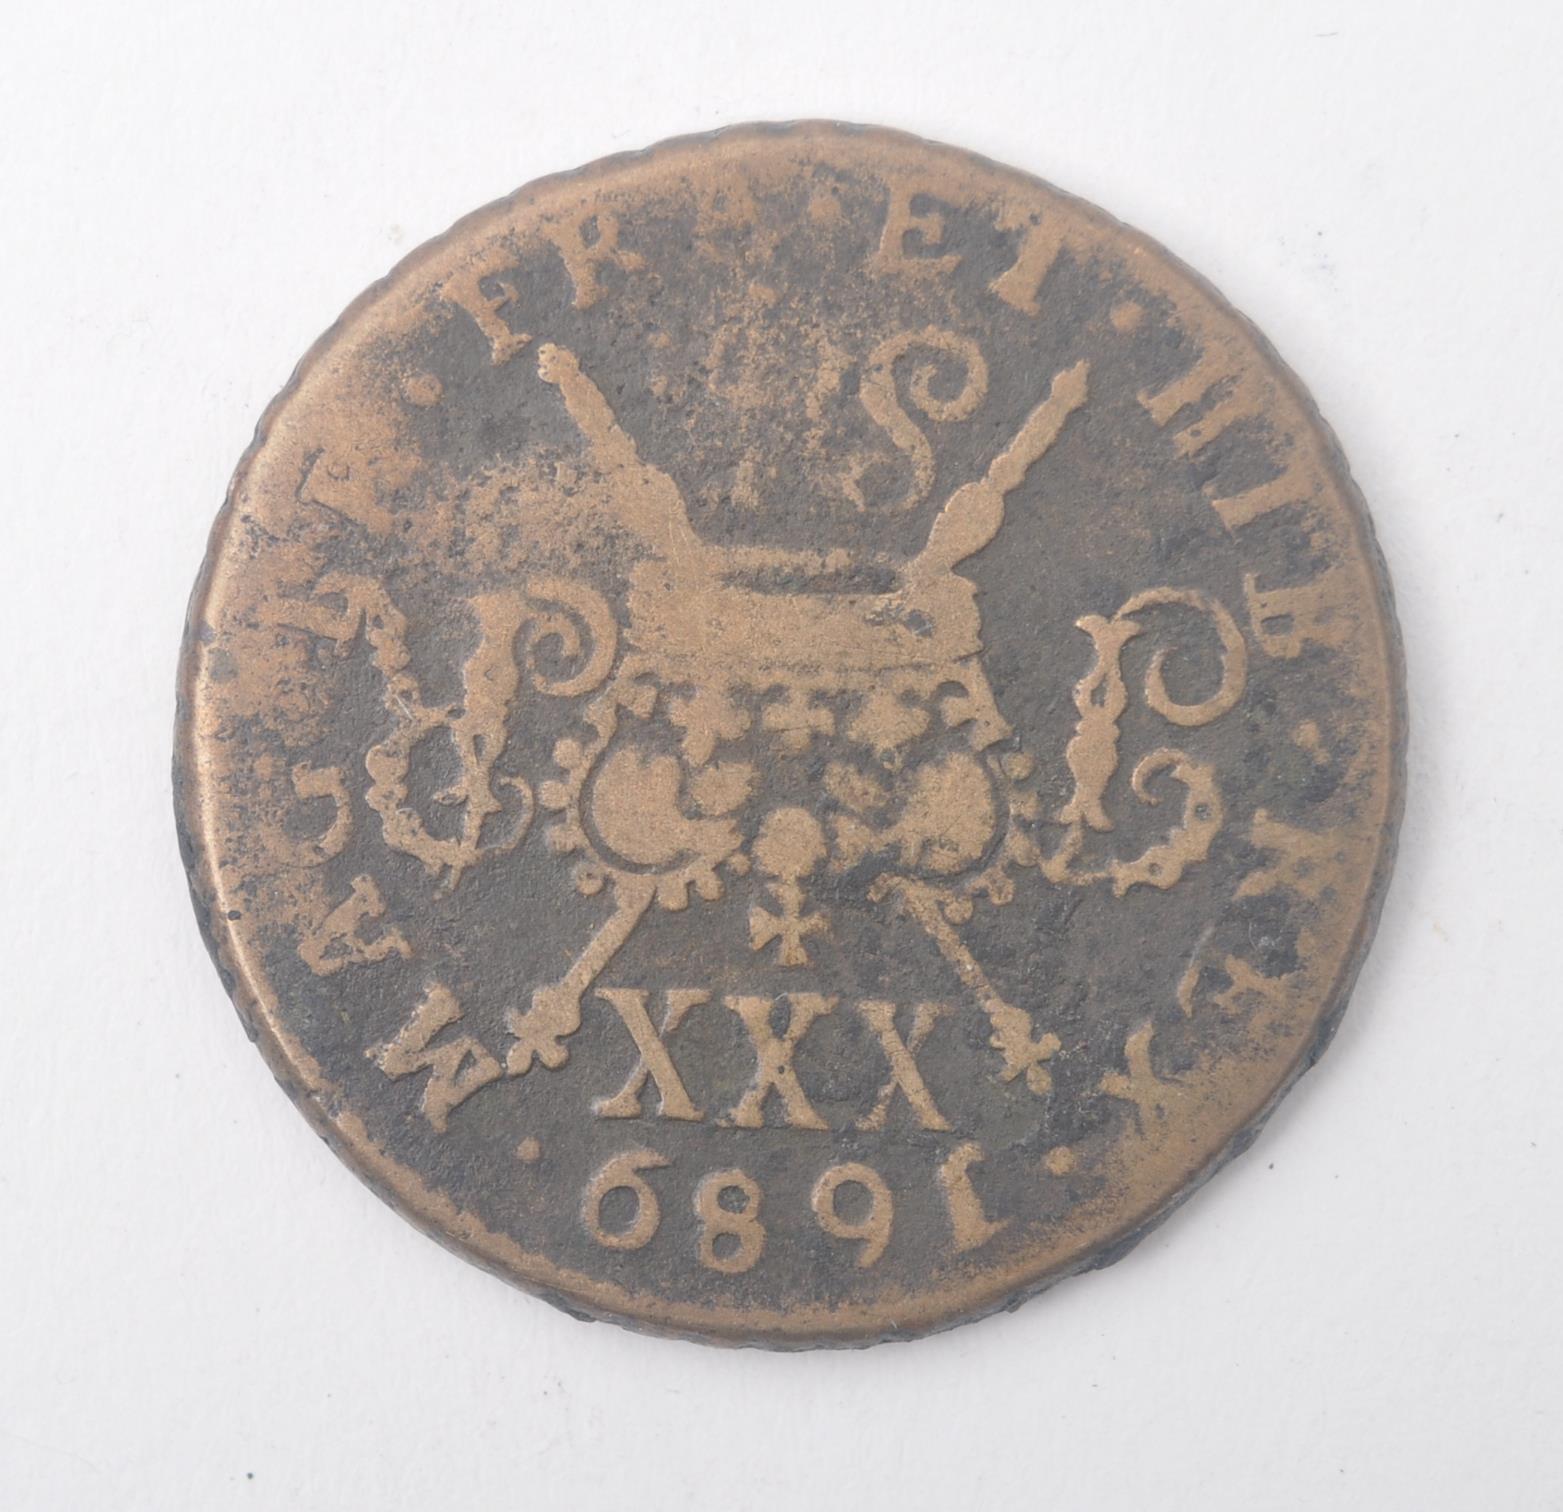 JAMES II 1689 GUN MONEY HALF CROWN COIN - Image 3 of 3